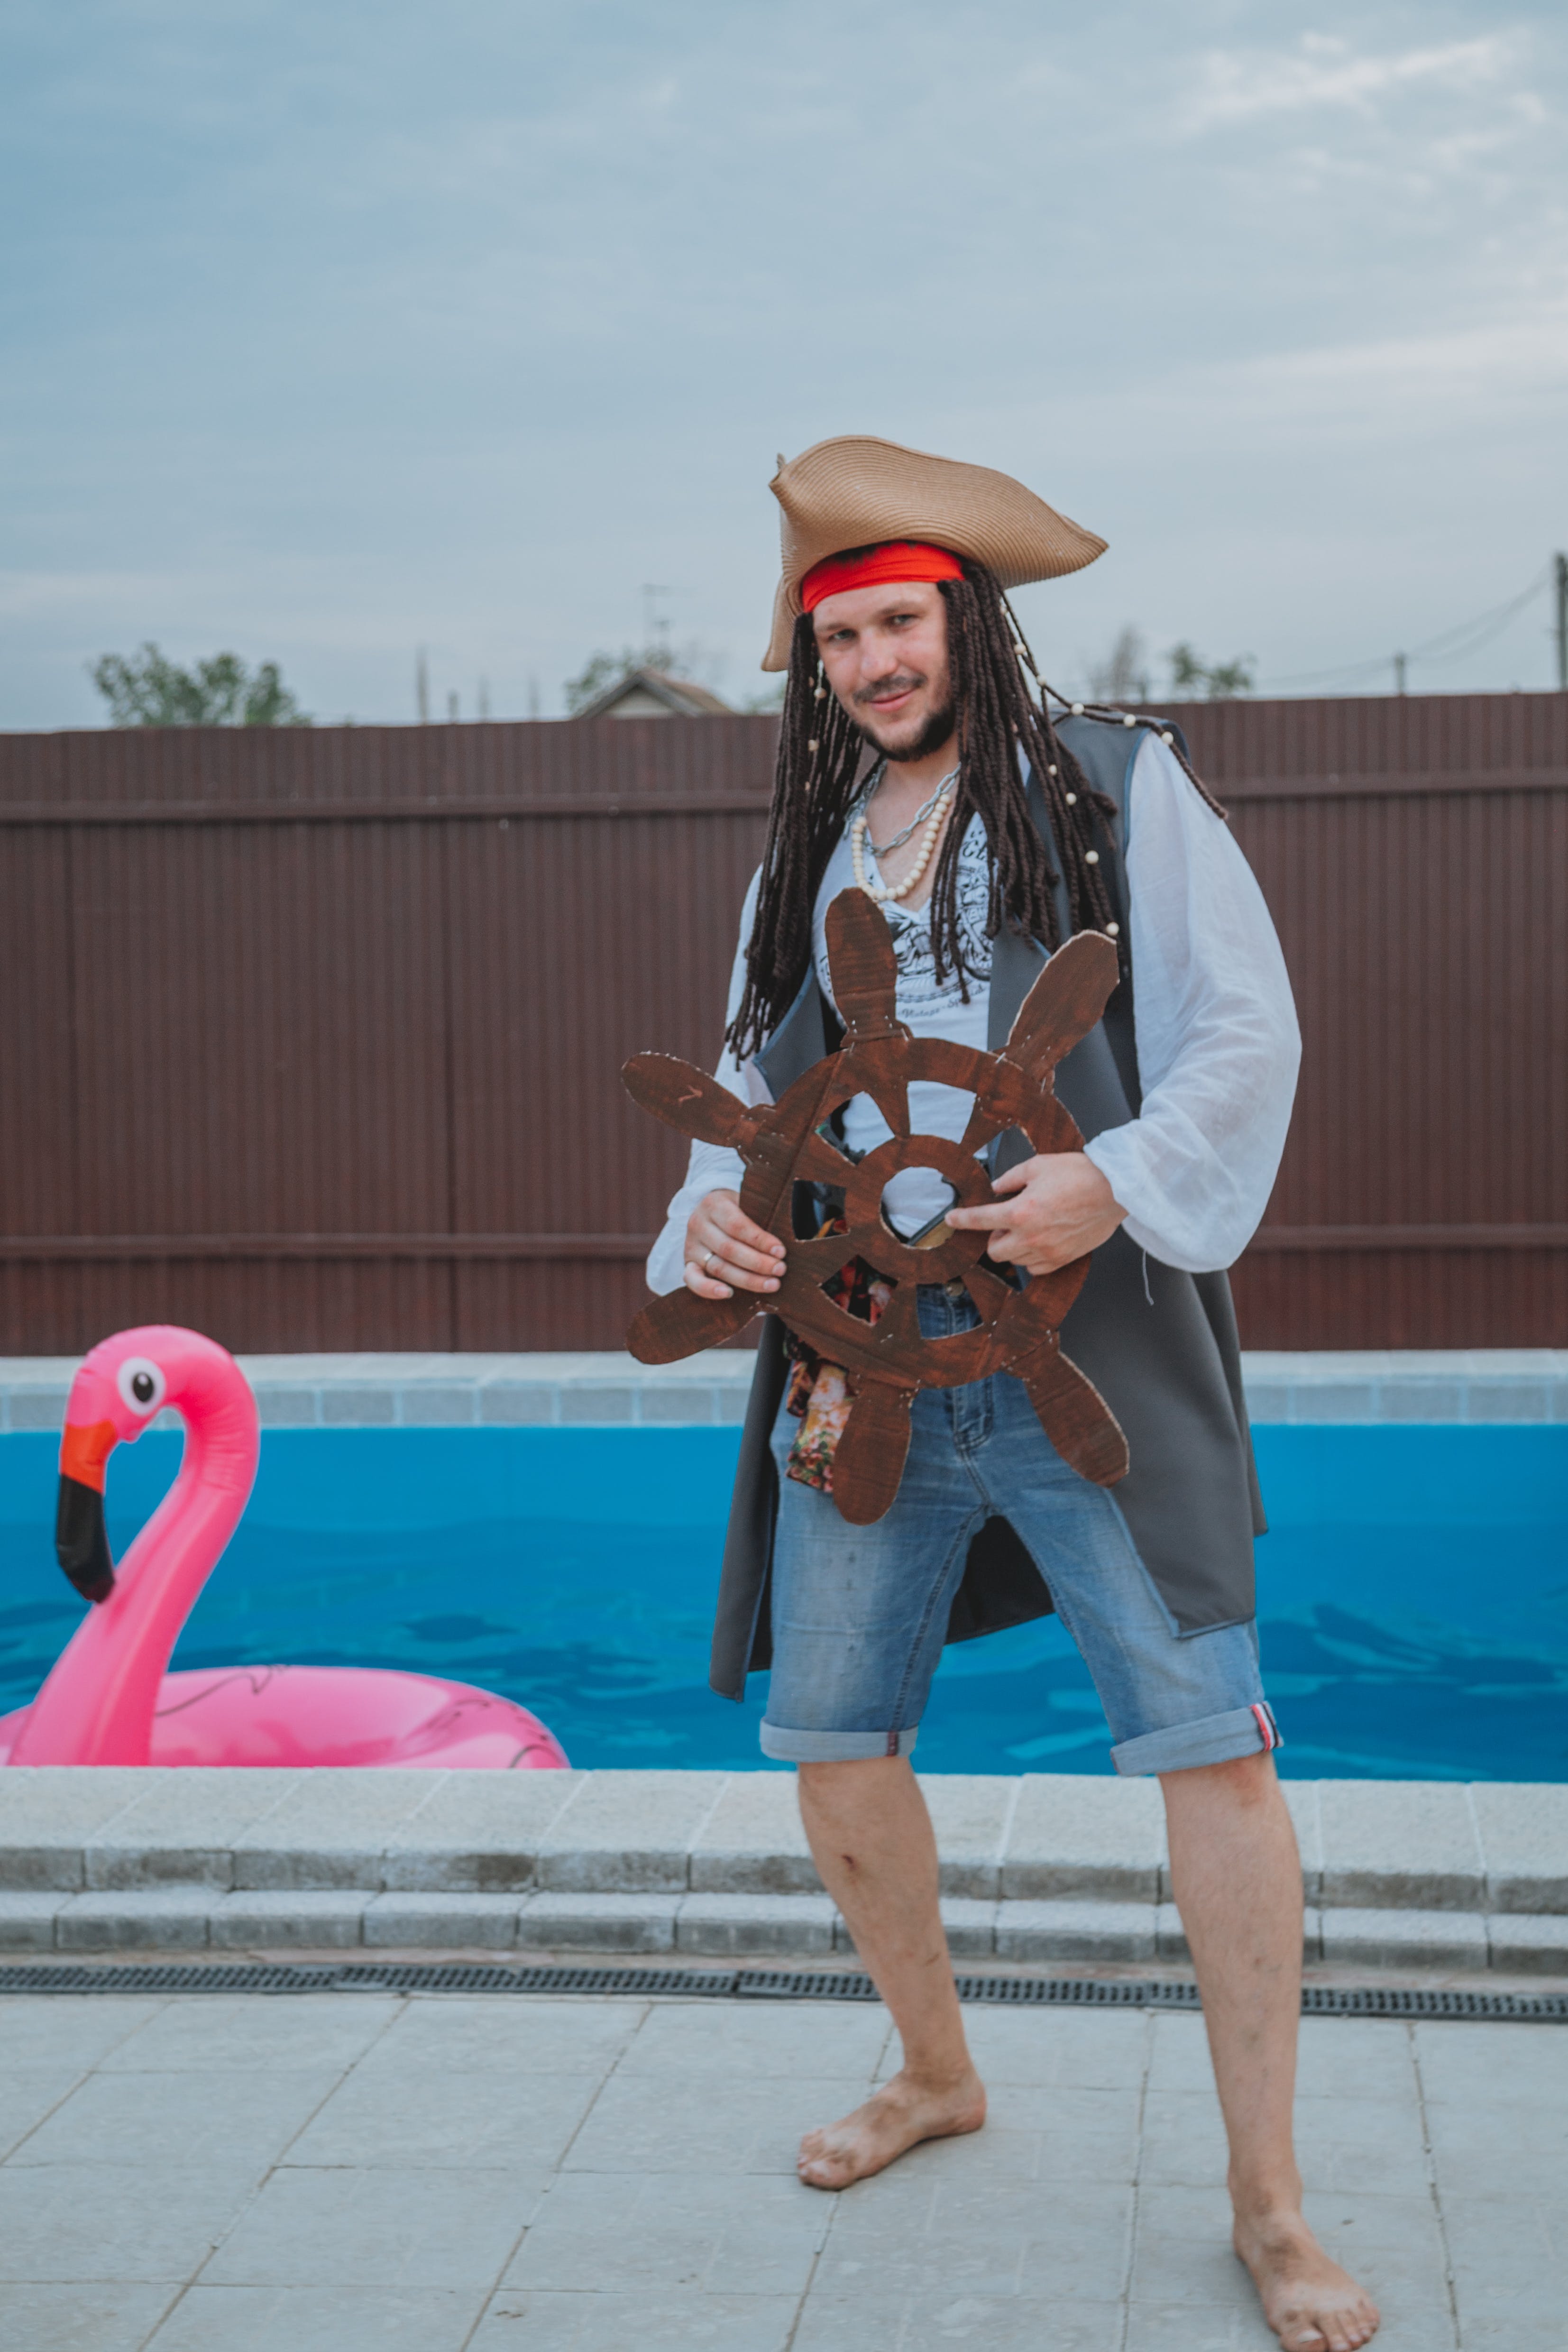 Un hombre disfrazado de pirata. | Fuente: Pexels